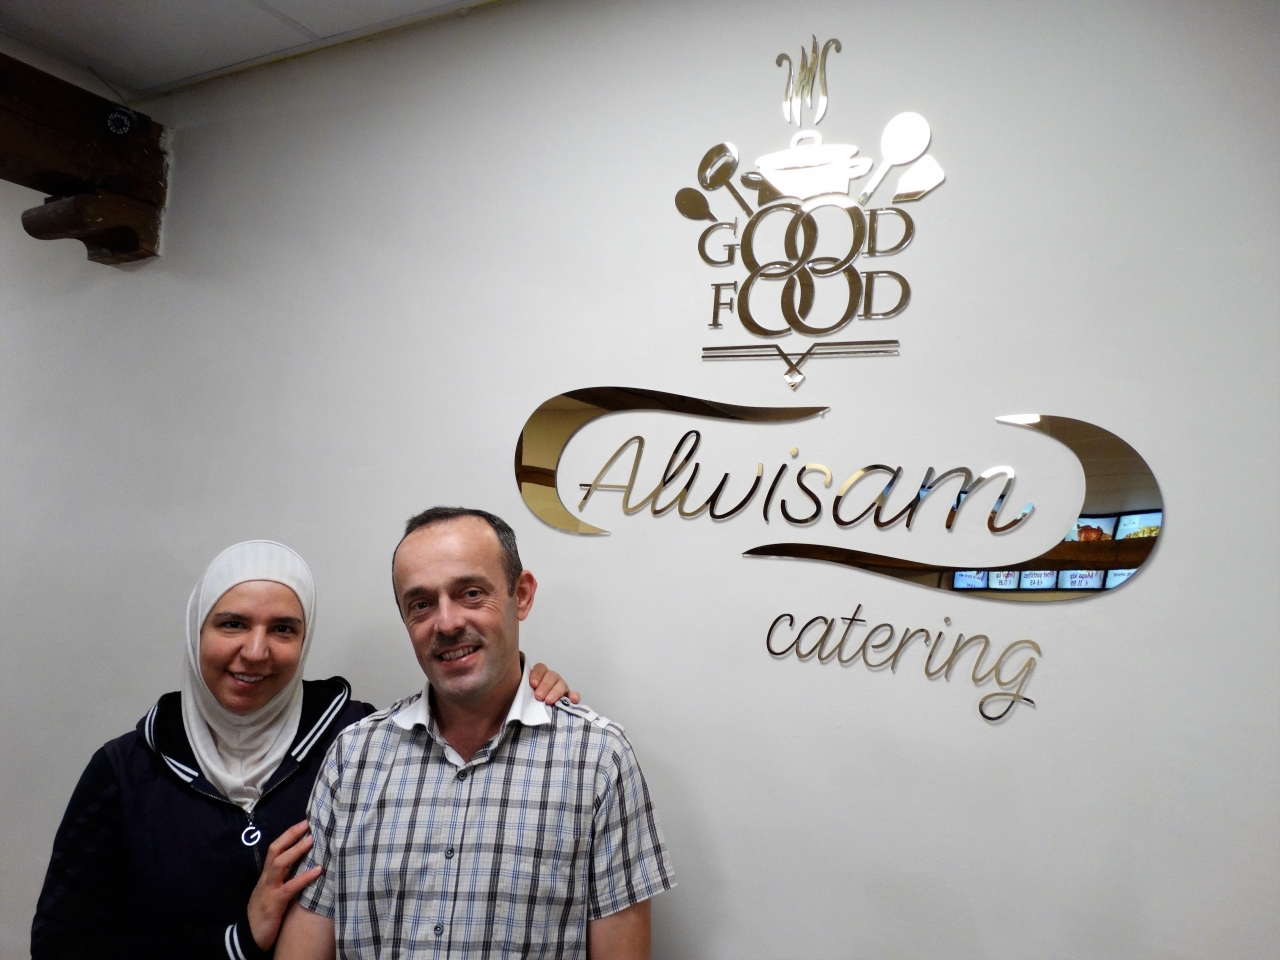 افتتاح مطعم الوسام السوري في هولندا: "الحلم أصبح حقيقة"